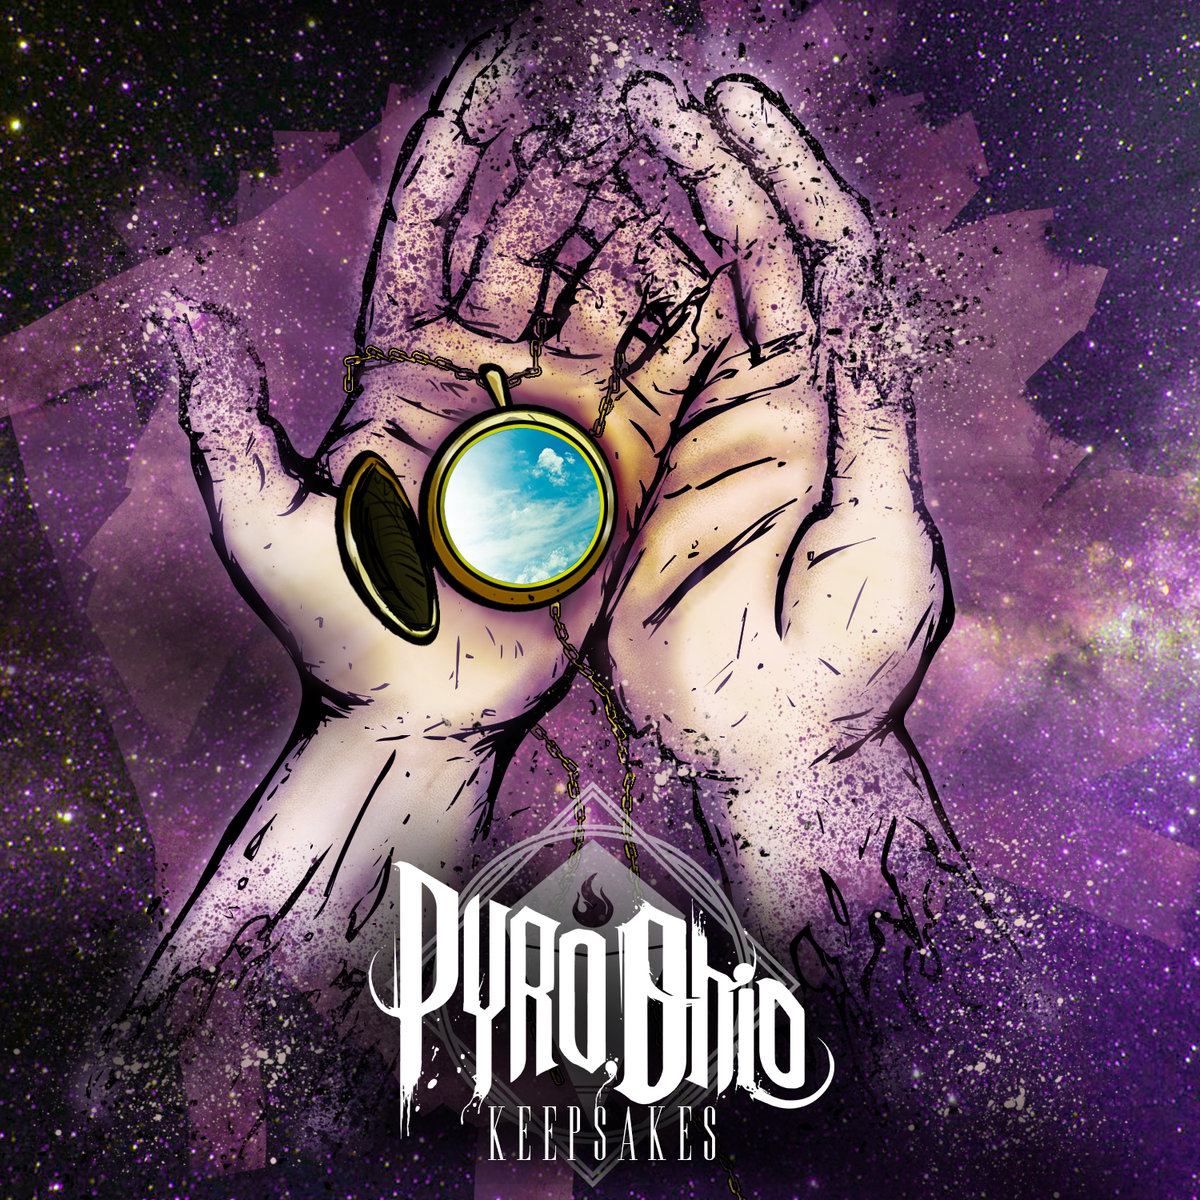 Pyro, Ohio - Keepsakes (2015) Album Info